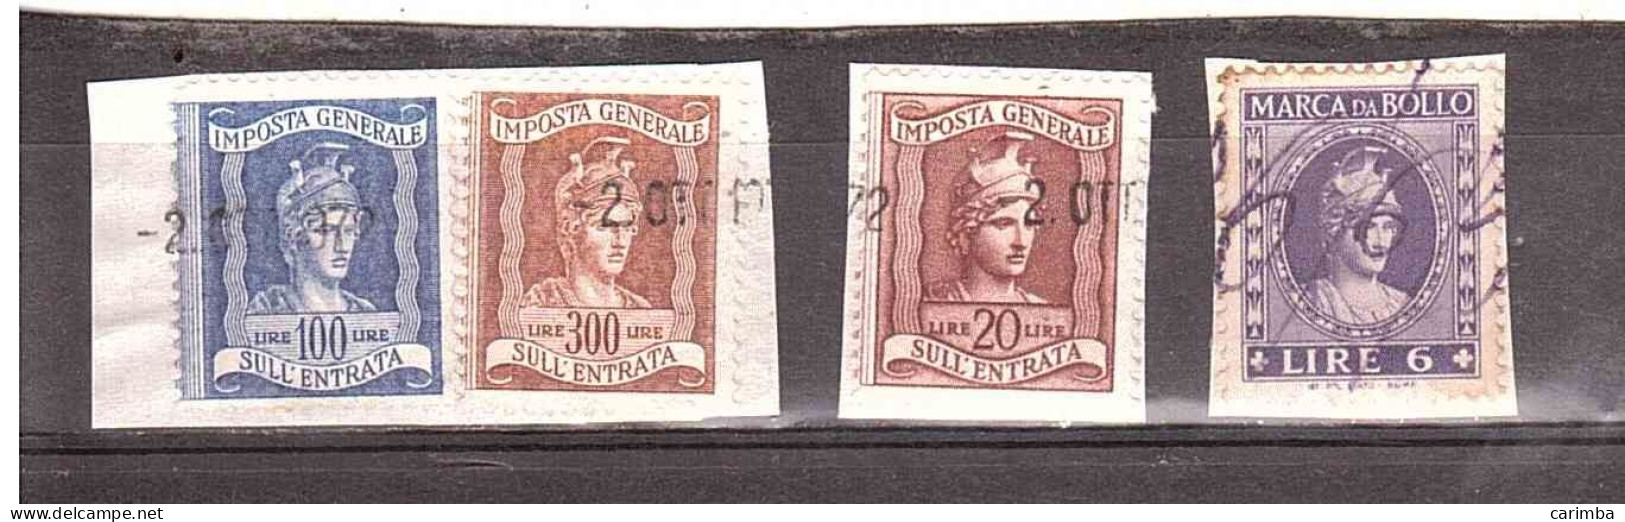 4 VALORI USATI - Revenue Stamps